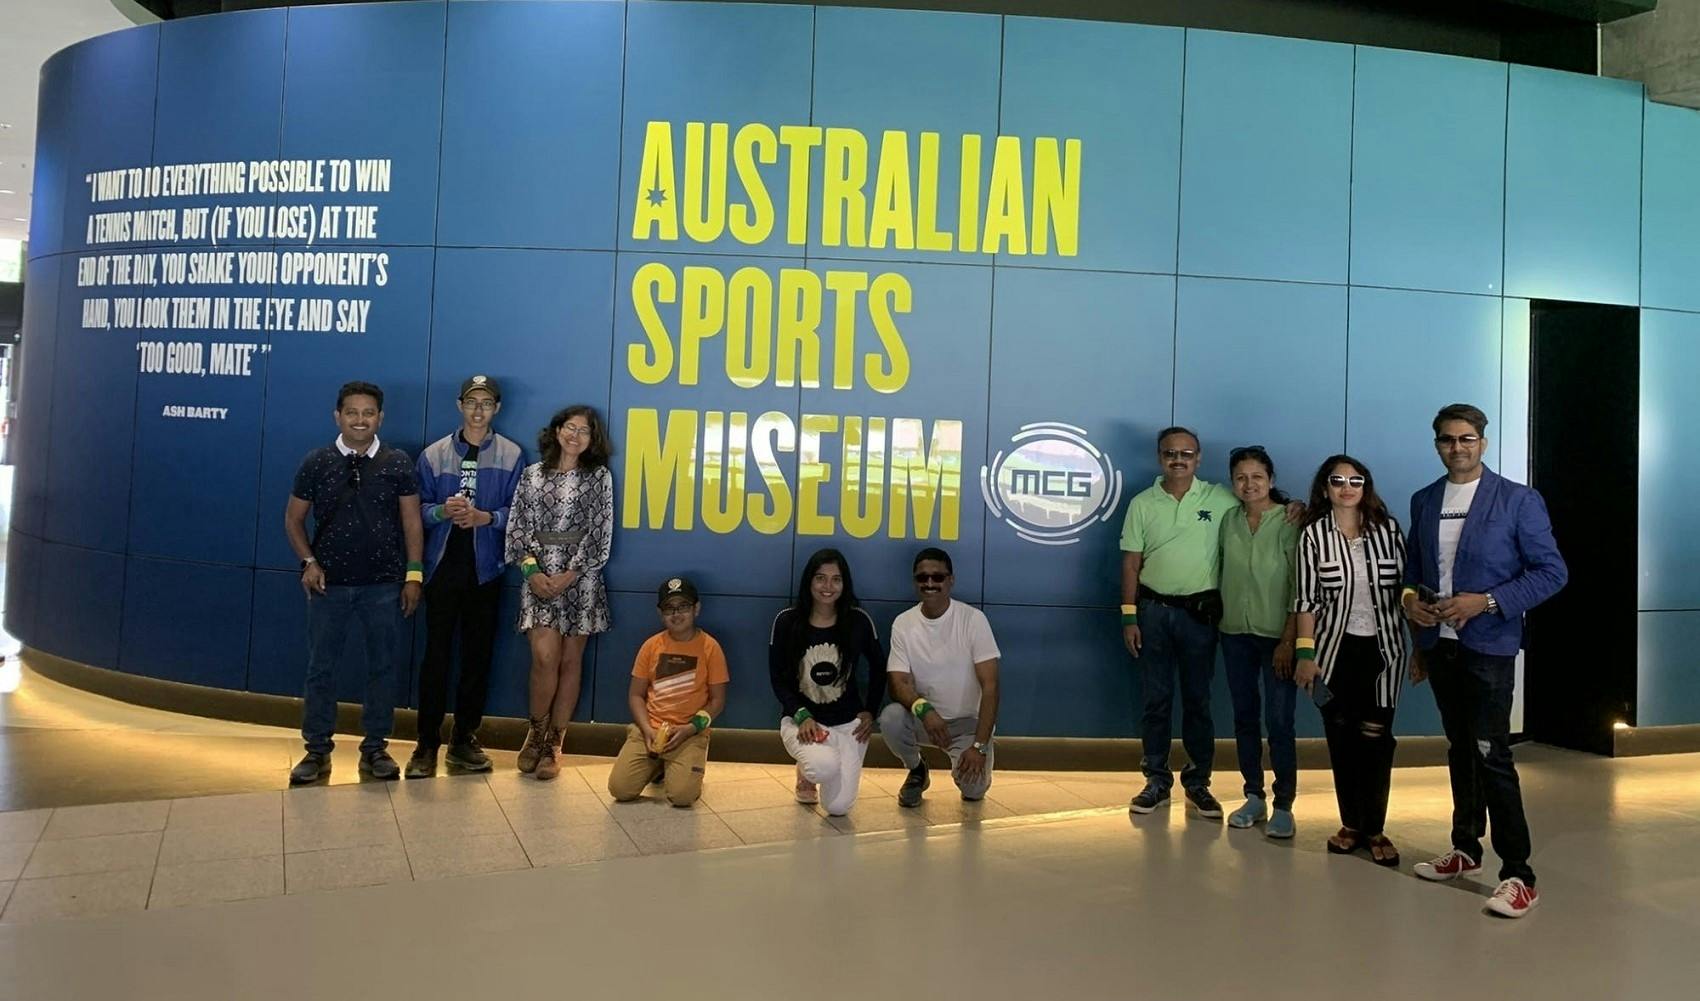 Melbourne sports precinct tour & Museum Musement